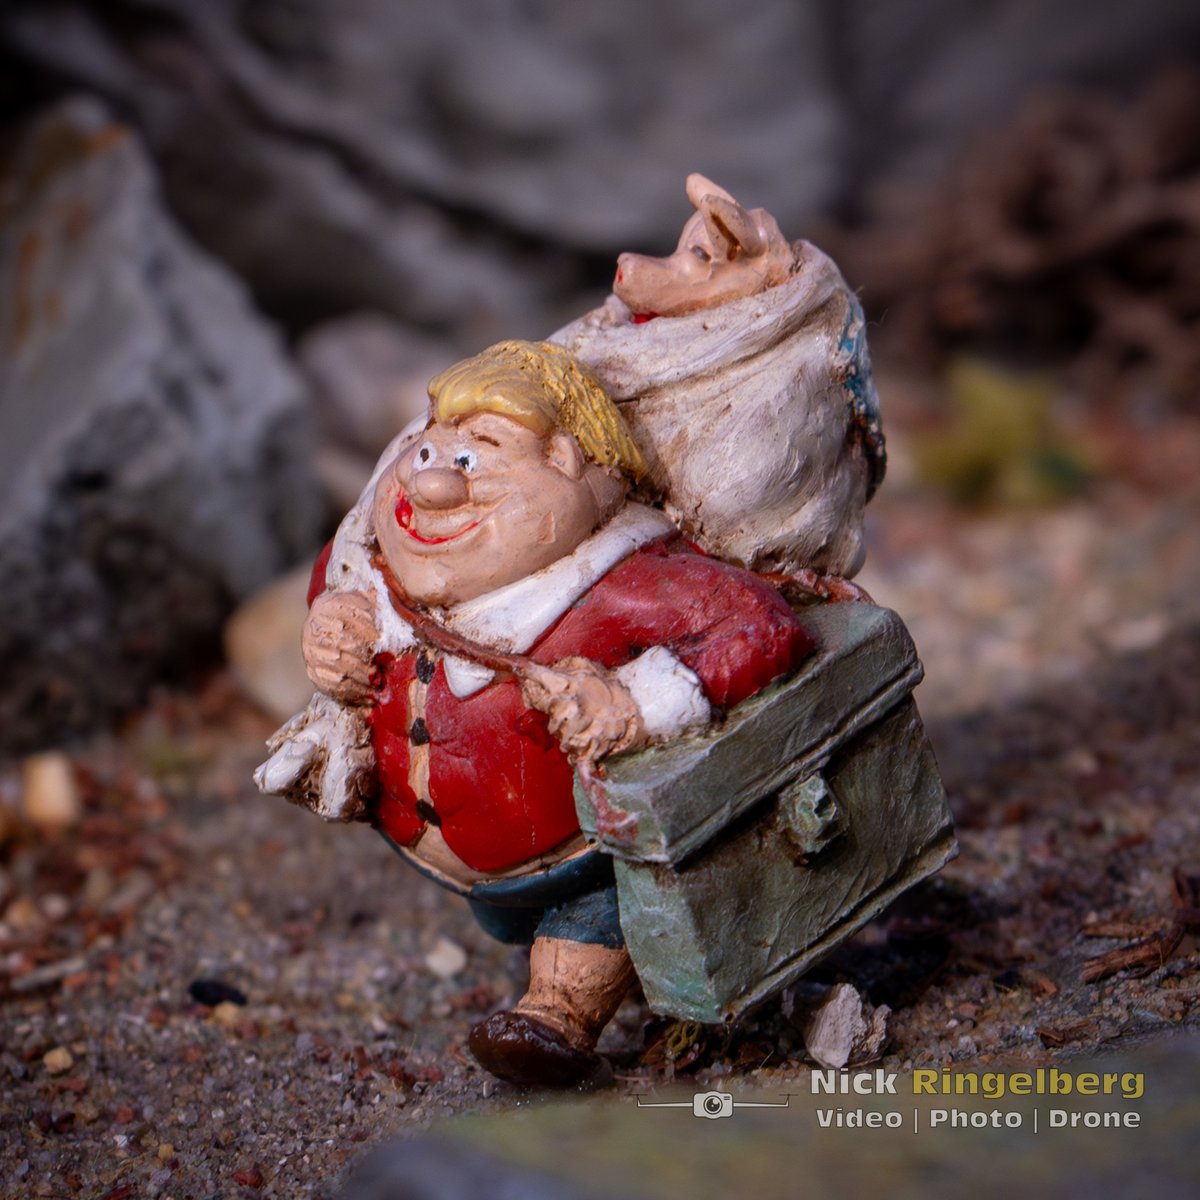 Holle Bolle Gijs heeft een varkentje op de kop getikt!

#efteling #diorama #miniatuur #hollebollegijs #themeparks